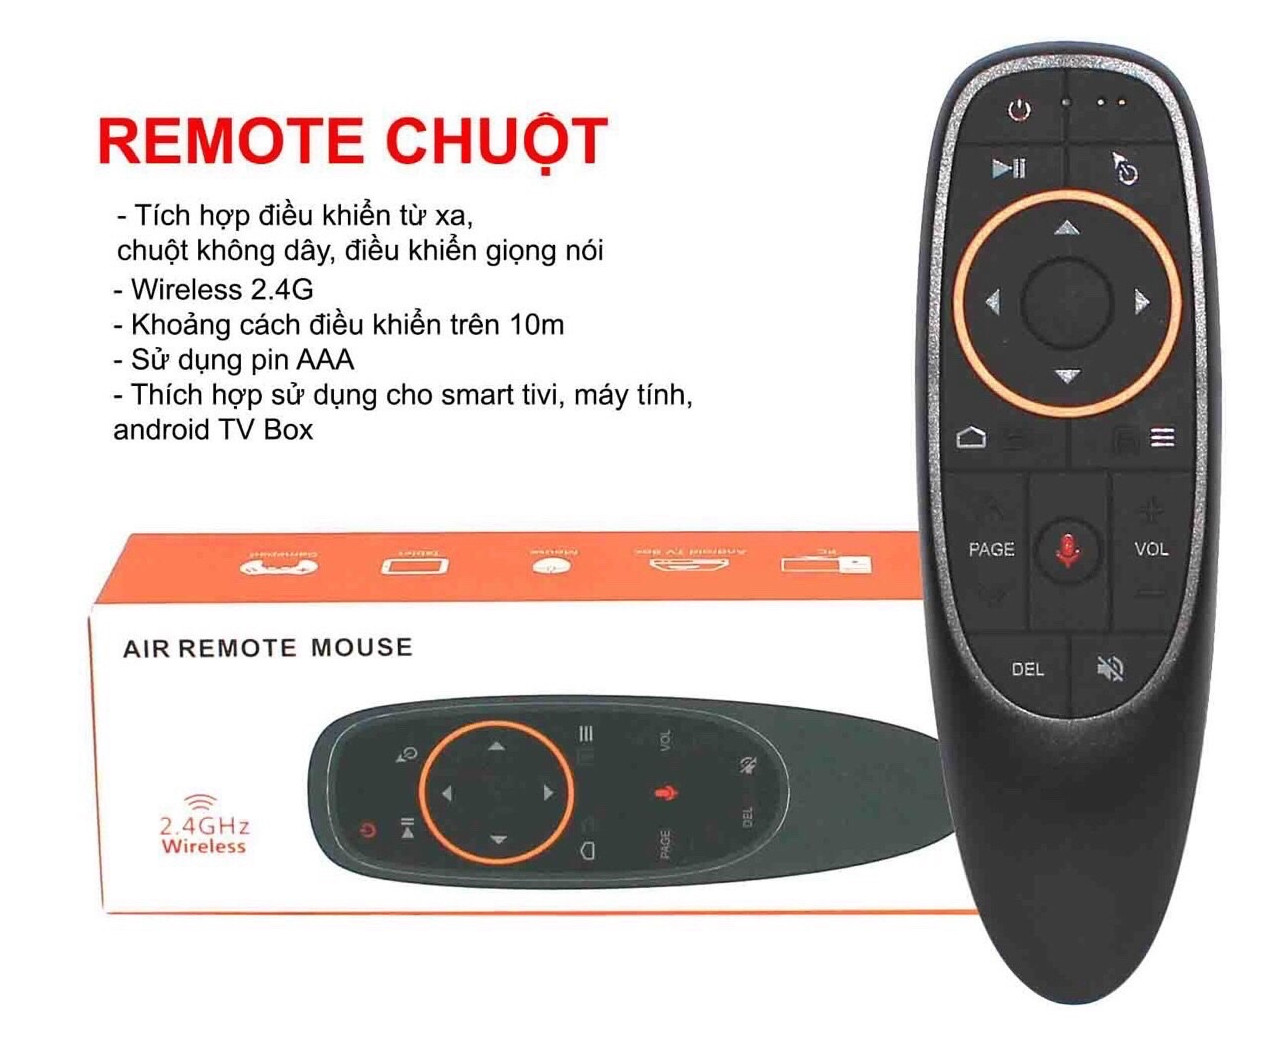 Remote chuột không dây tích hợp điều khiển từ xa, có điều khiển giọng nói